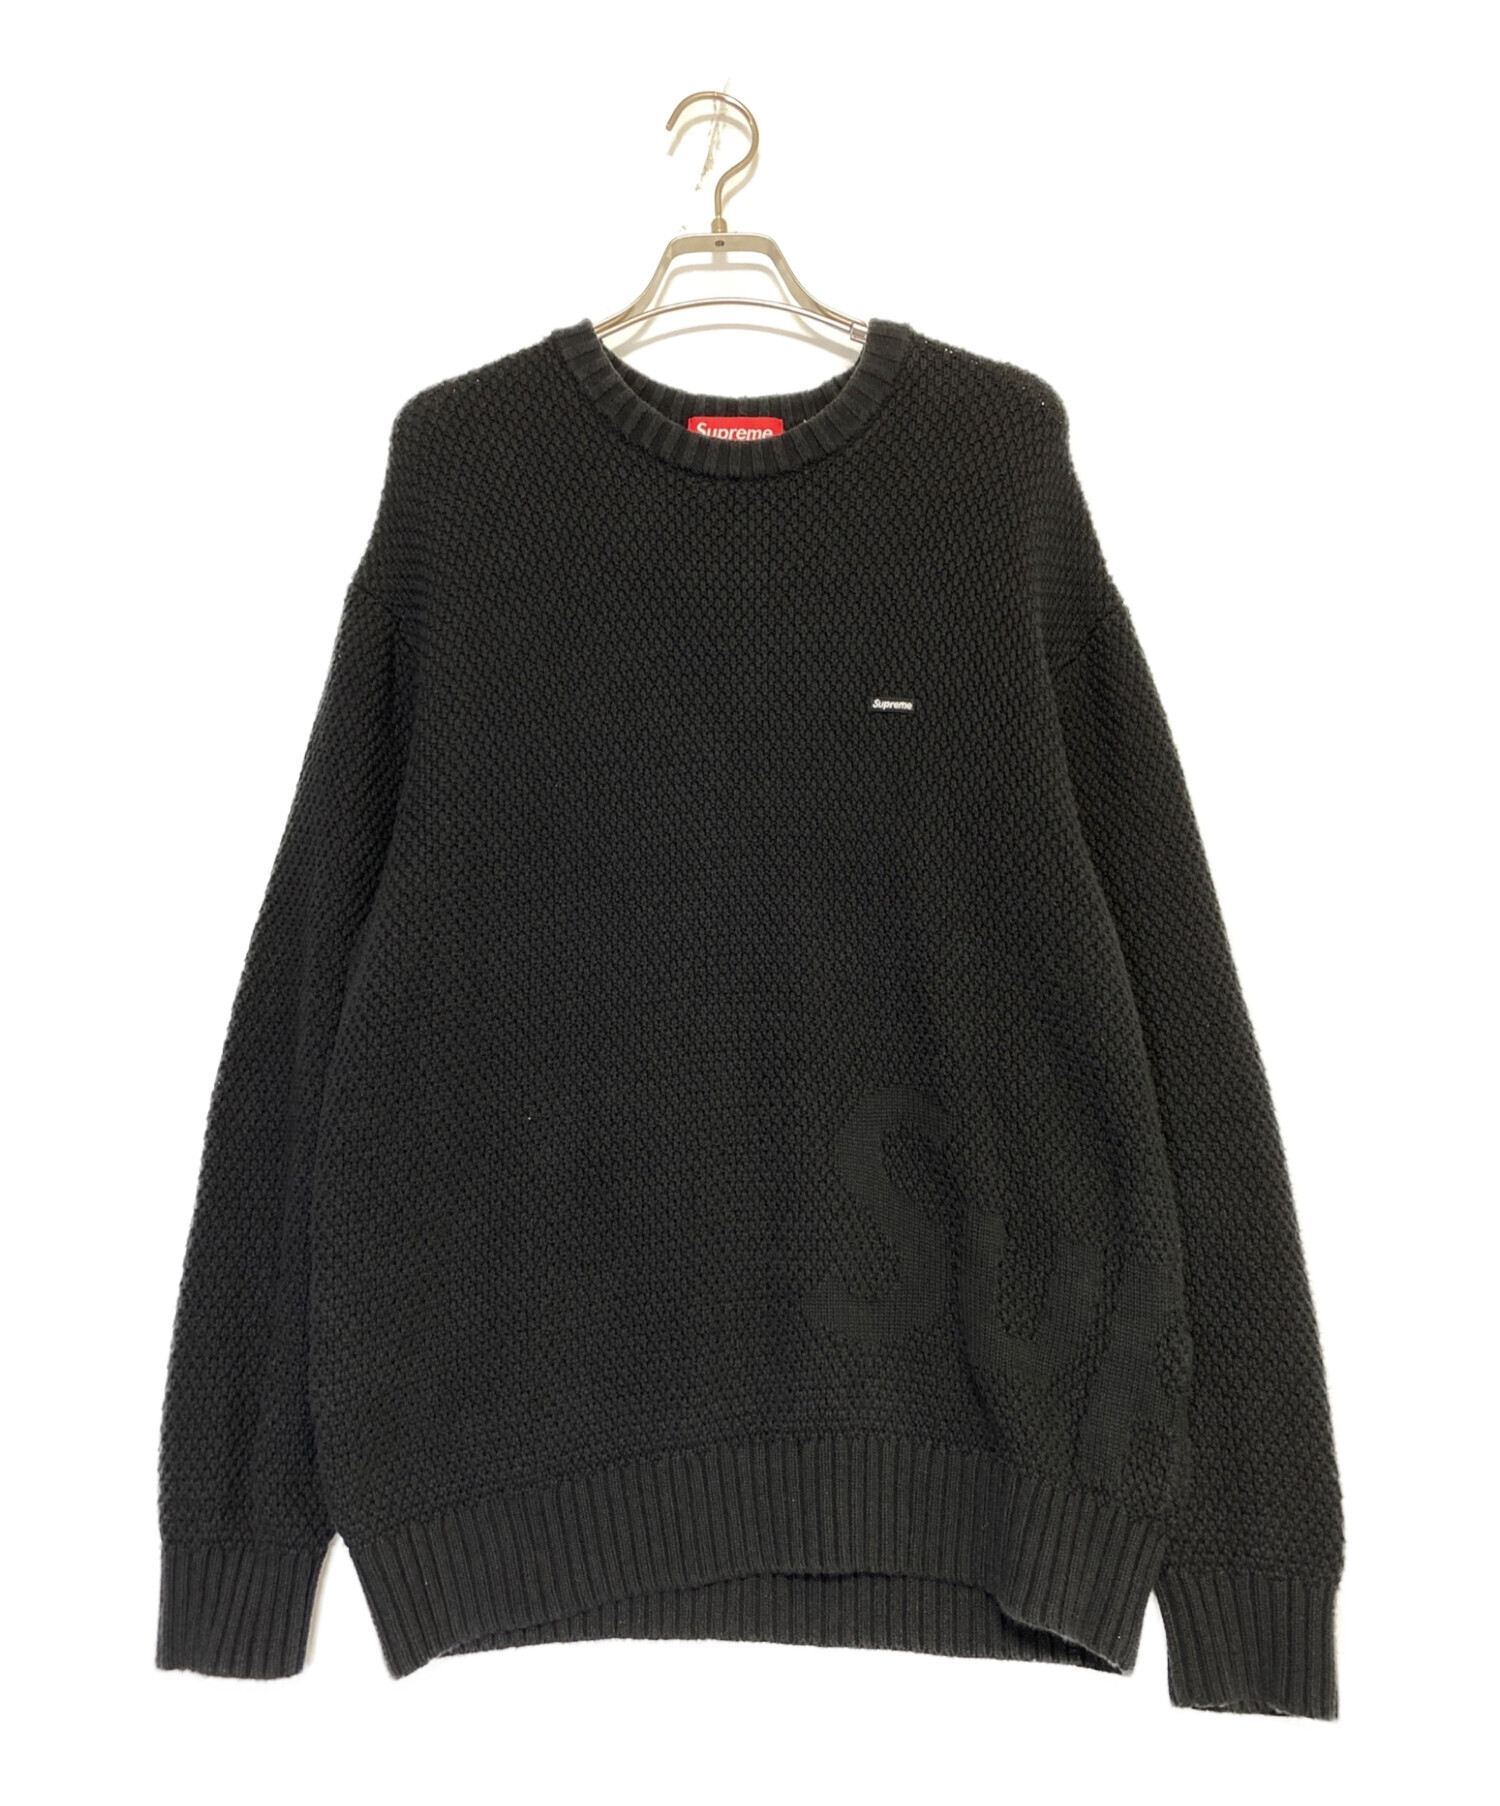 SUPREME (シュプリーム) Textured Small Box Sweater ブラック サイズ:M